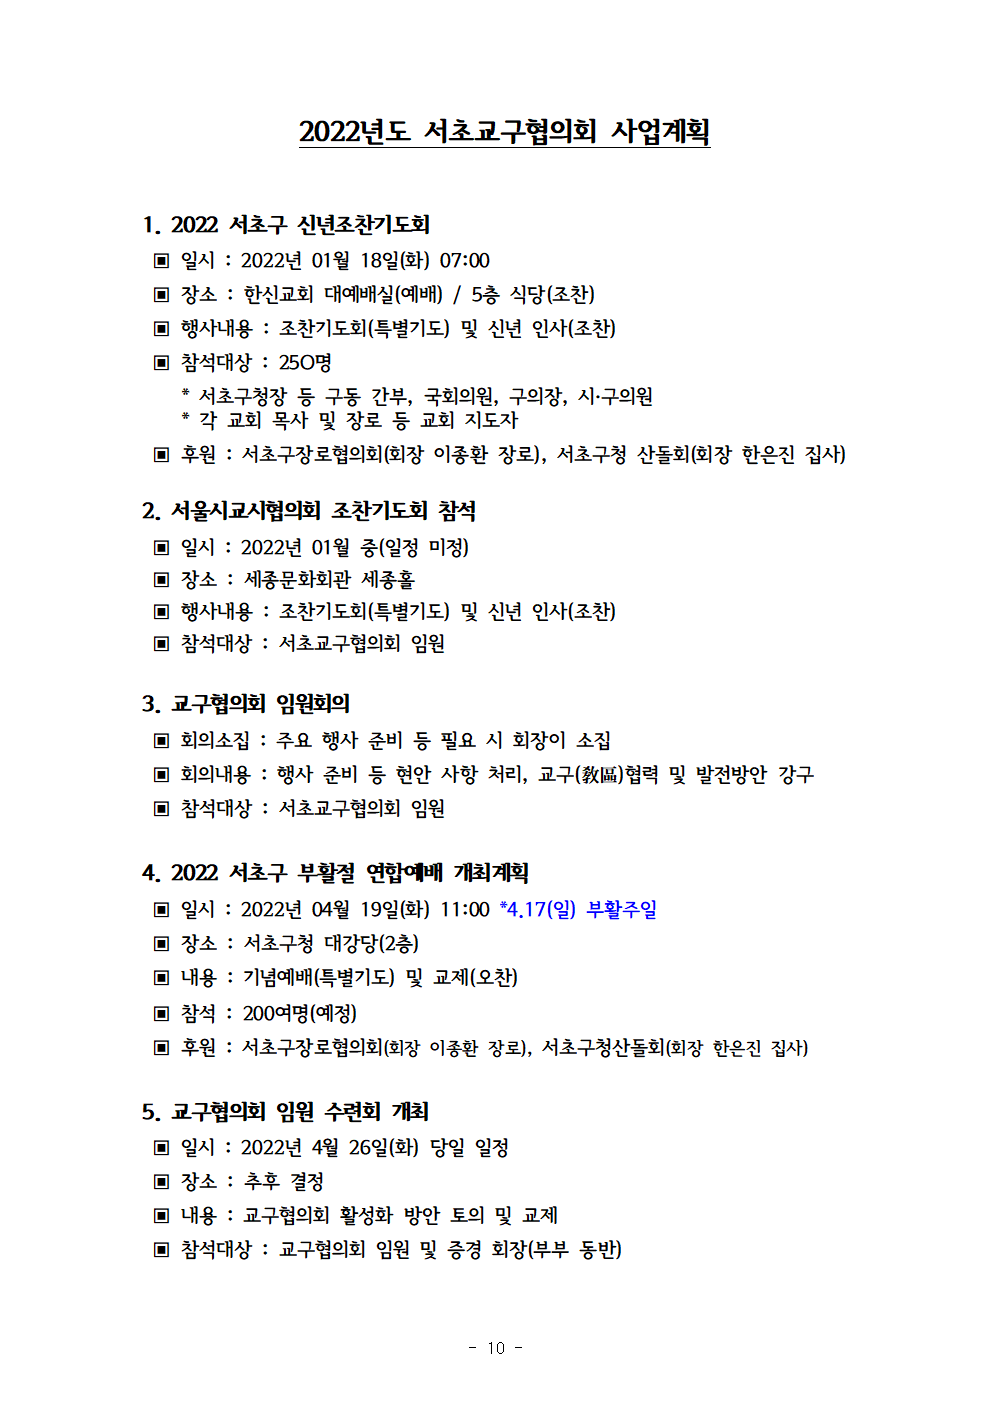 2021회기 서초교구협의회 정기총회자료(12.17)_홈피용011.png